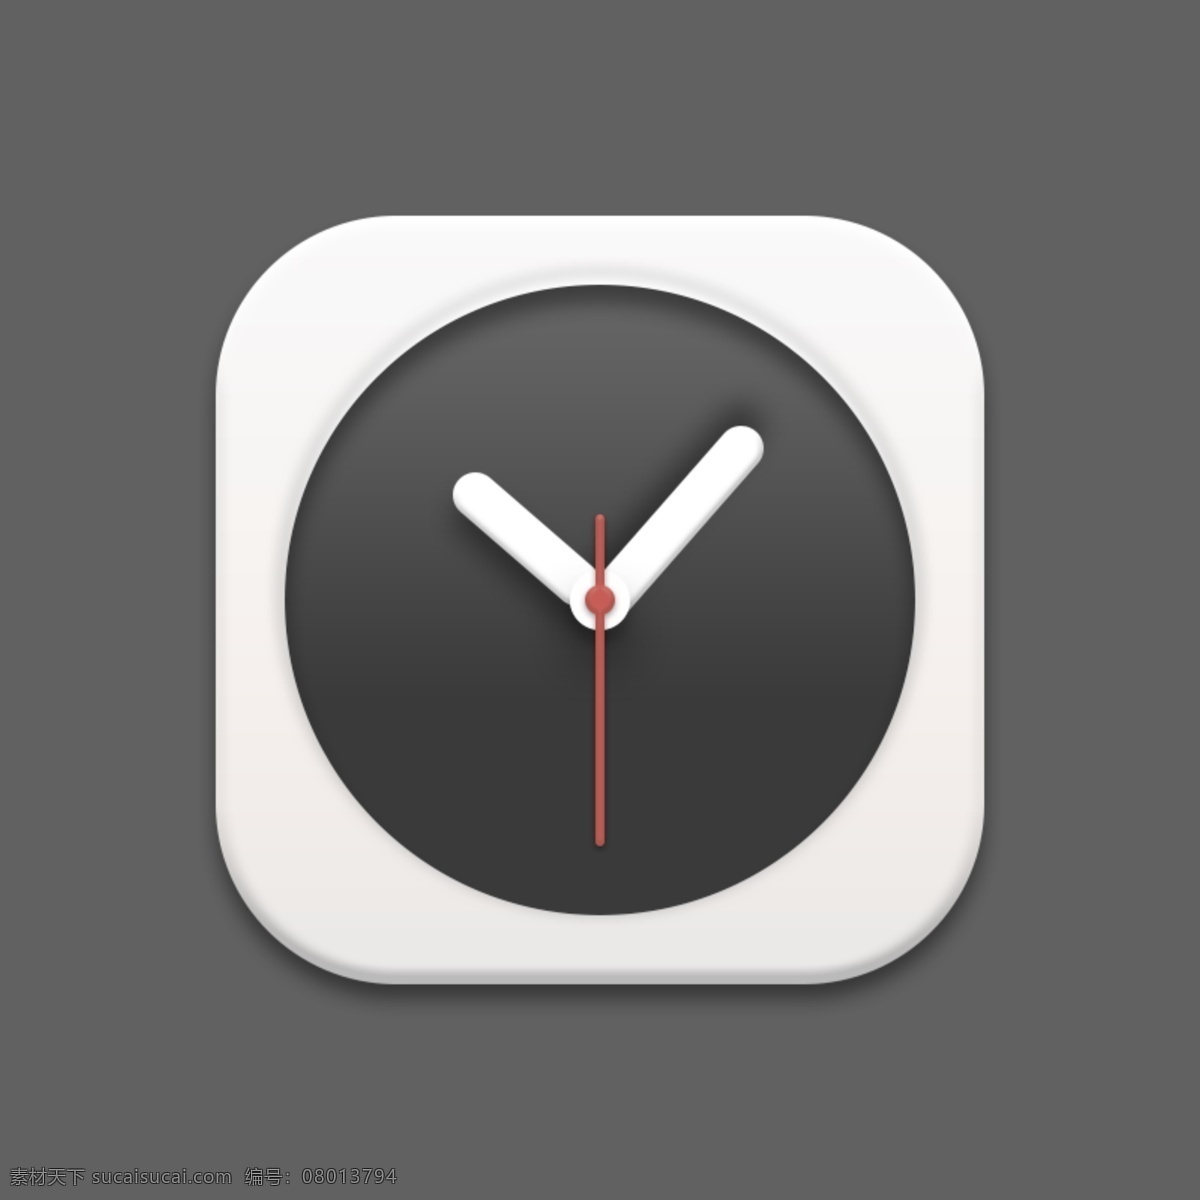 时钟 图标 icon 矢量 时钟图标 时钟icon 时钟素材 时钟矢量